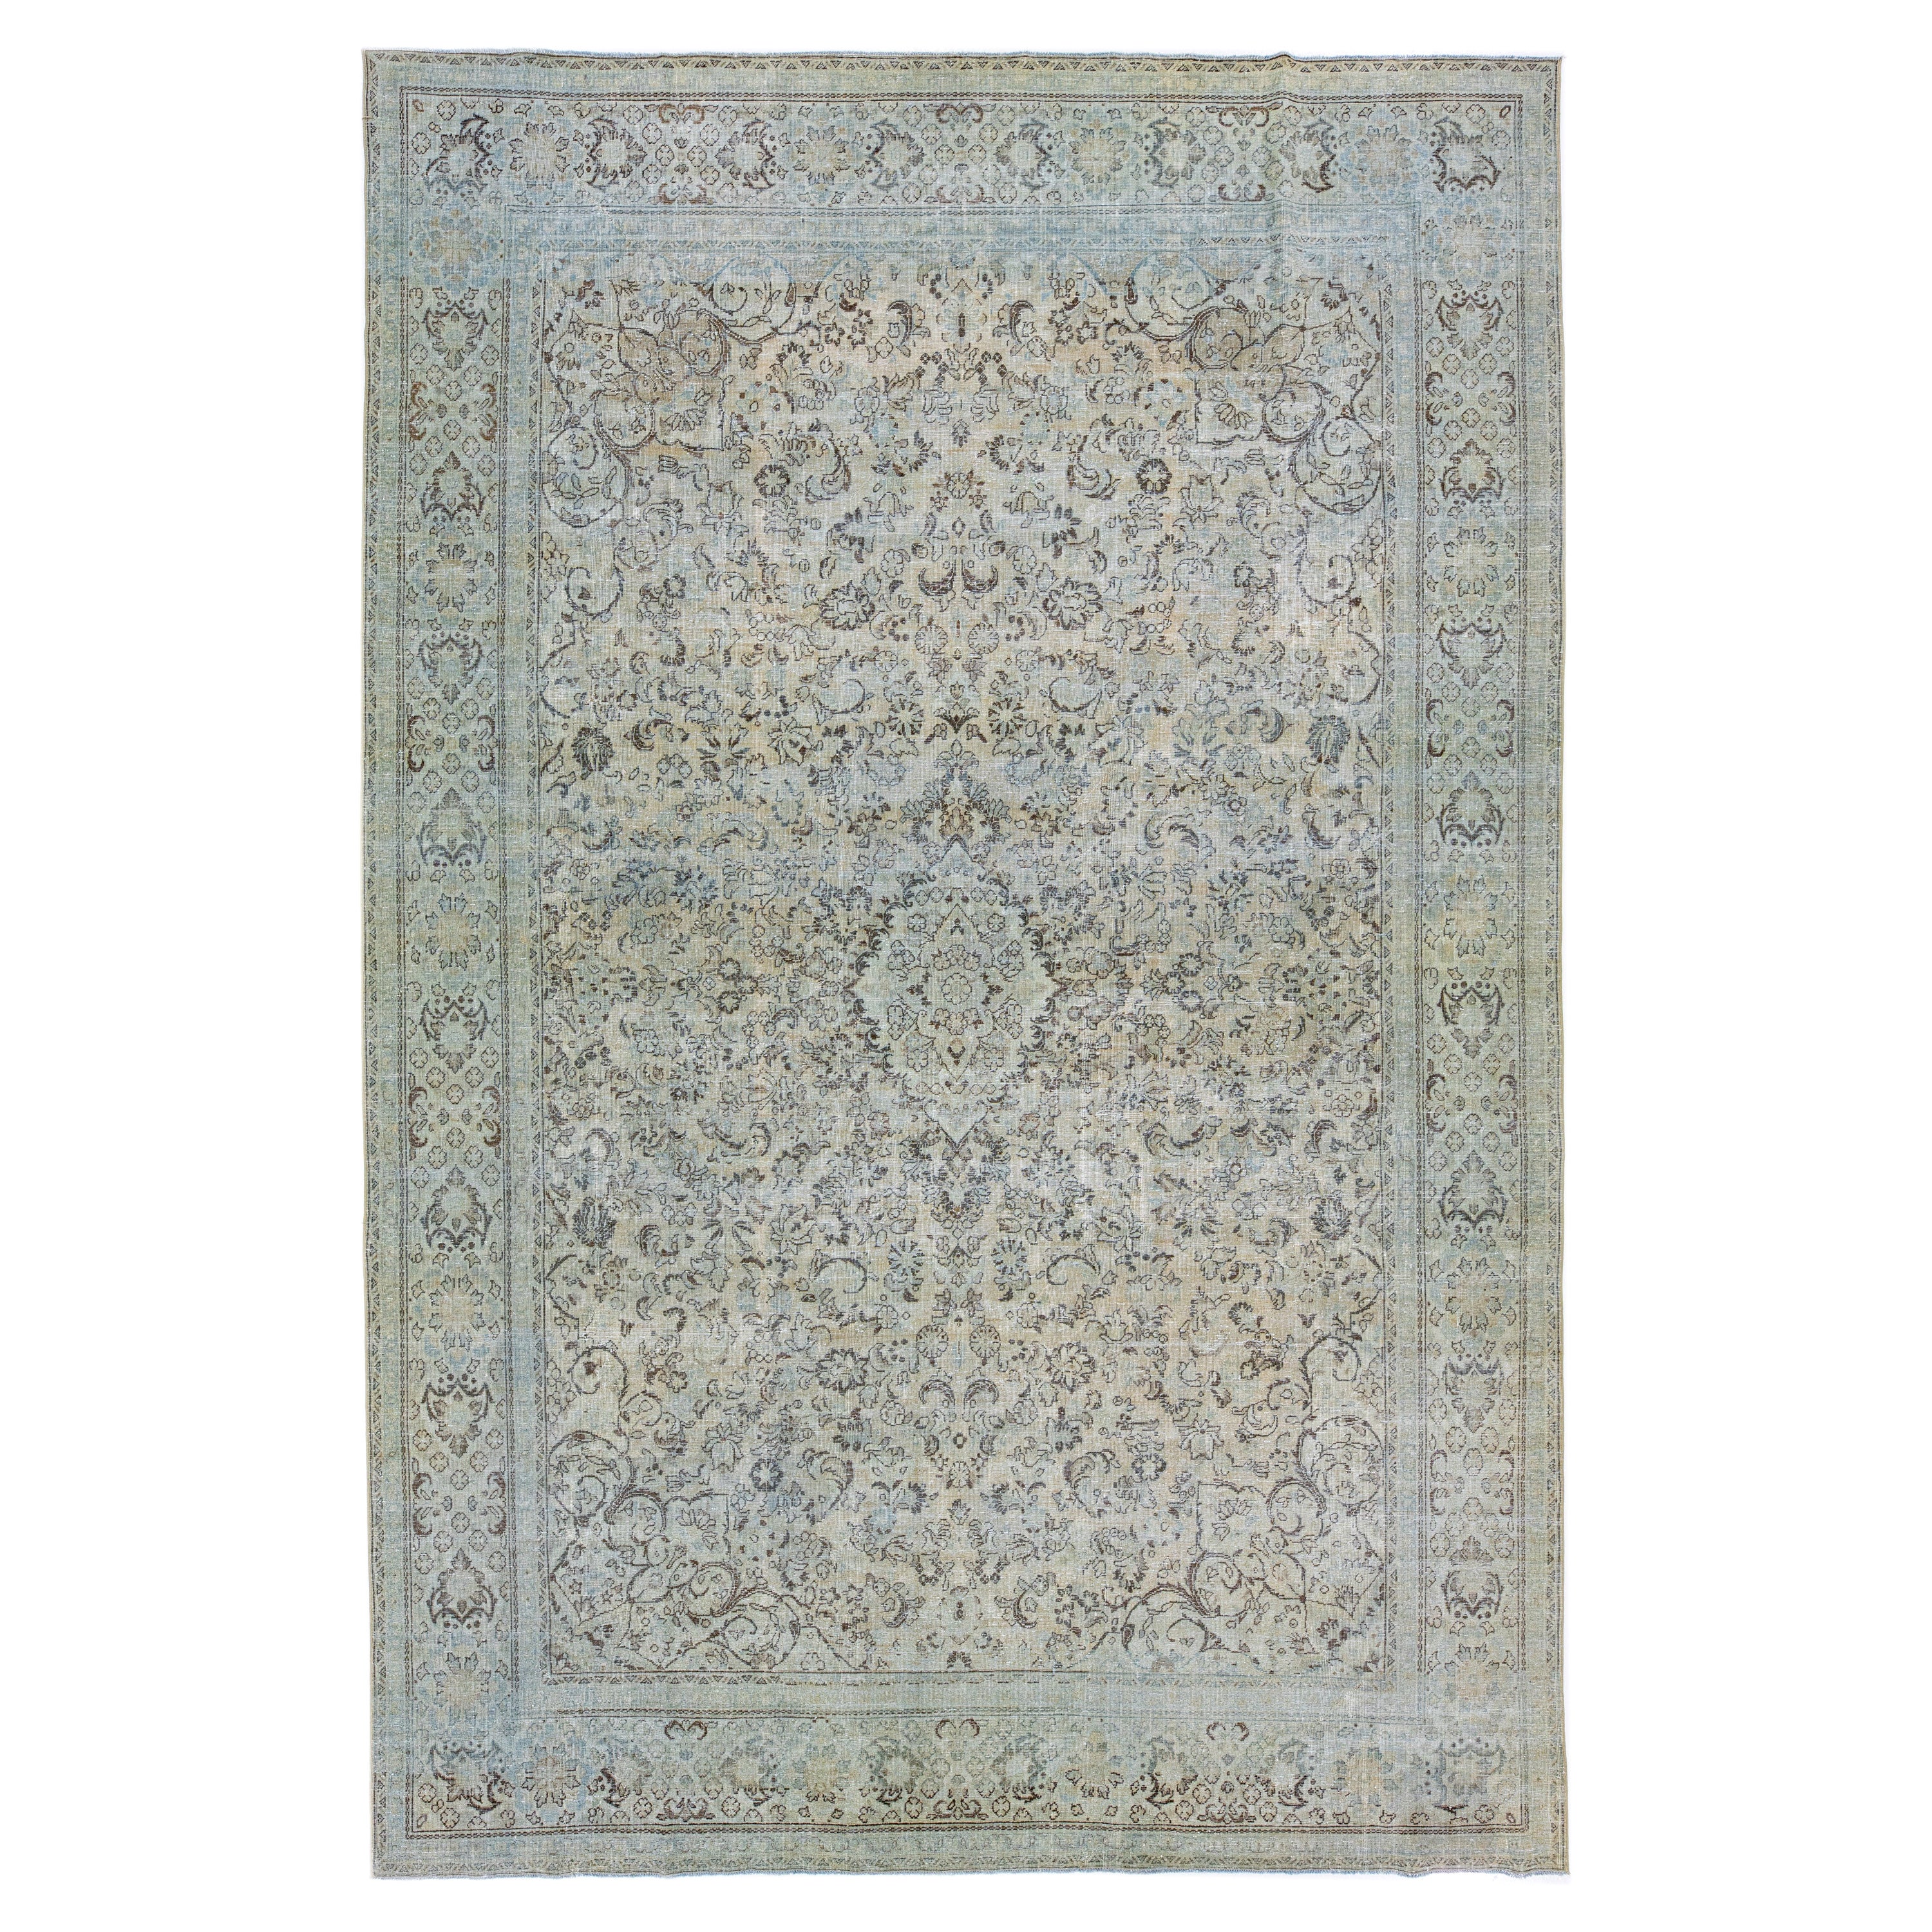 Handmade Vintage Persian Mahal Beige Wool Rug with Medallion Motif